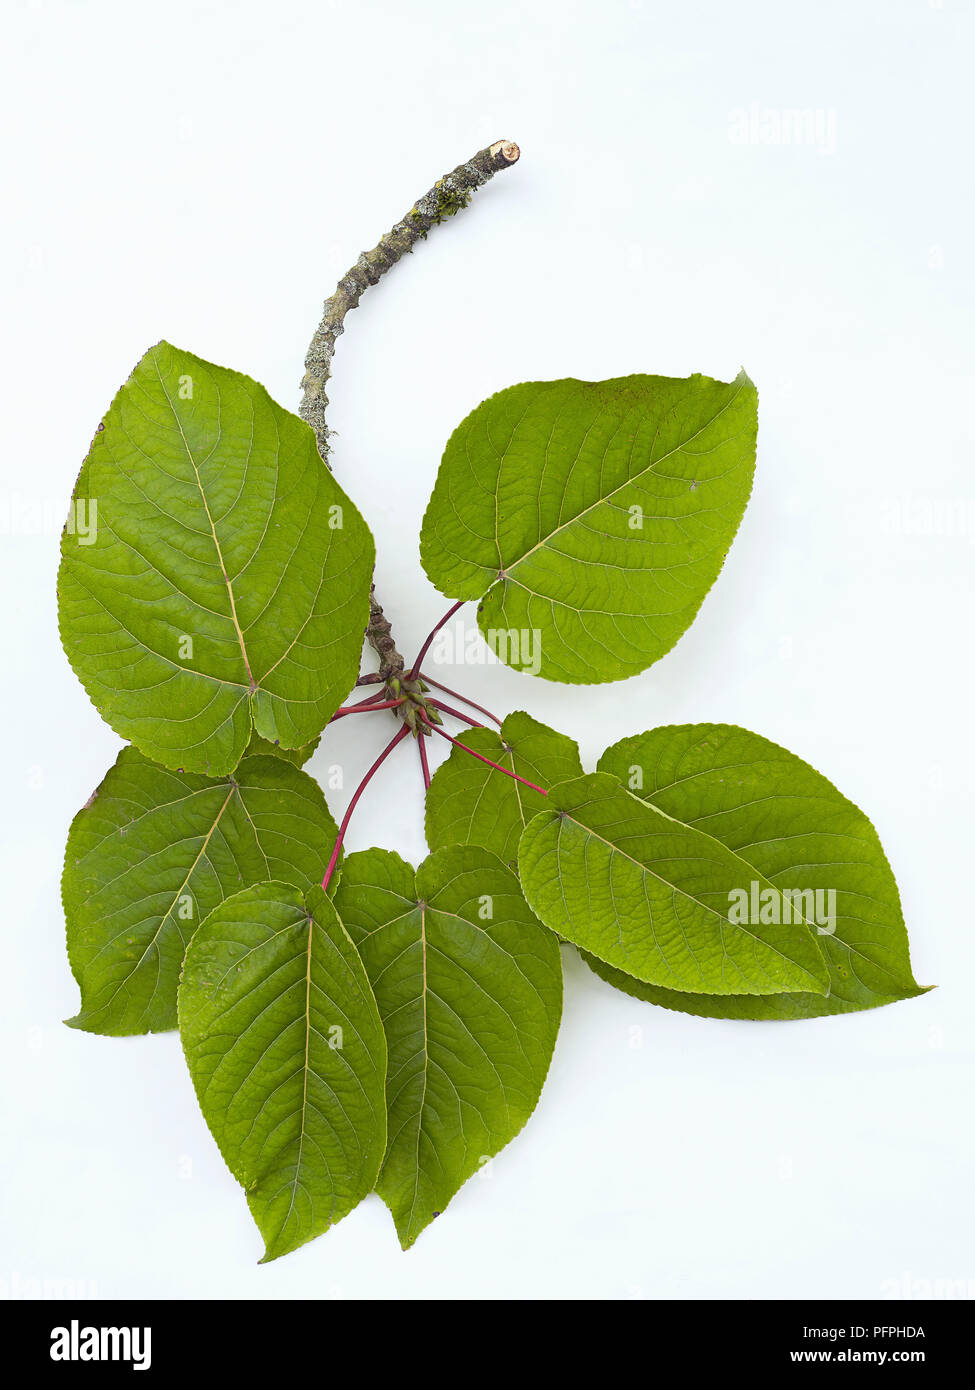 Populus lasiocarpa (Cinese Collana) Verde foglie di pioppo sullo stelo di taglio, close-up Foto Stock